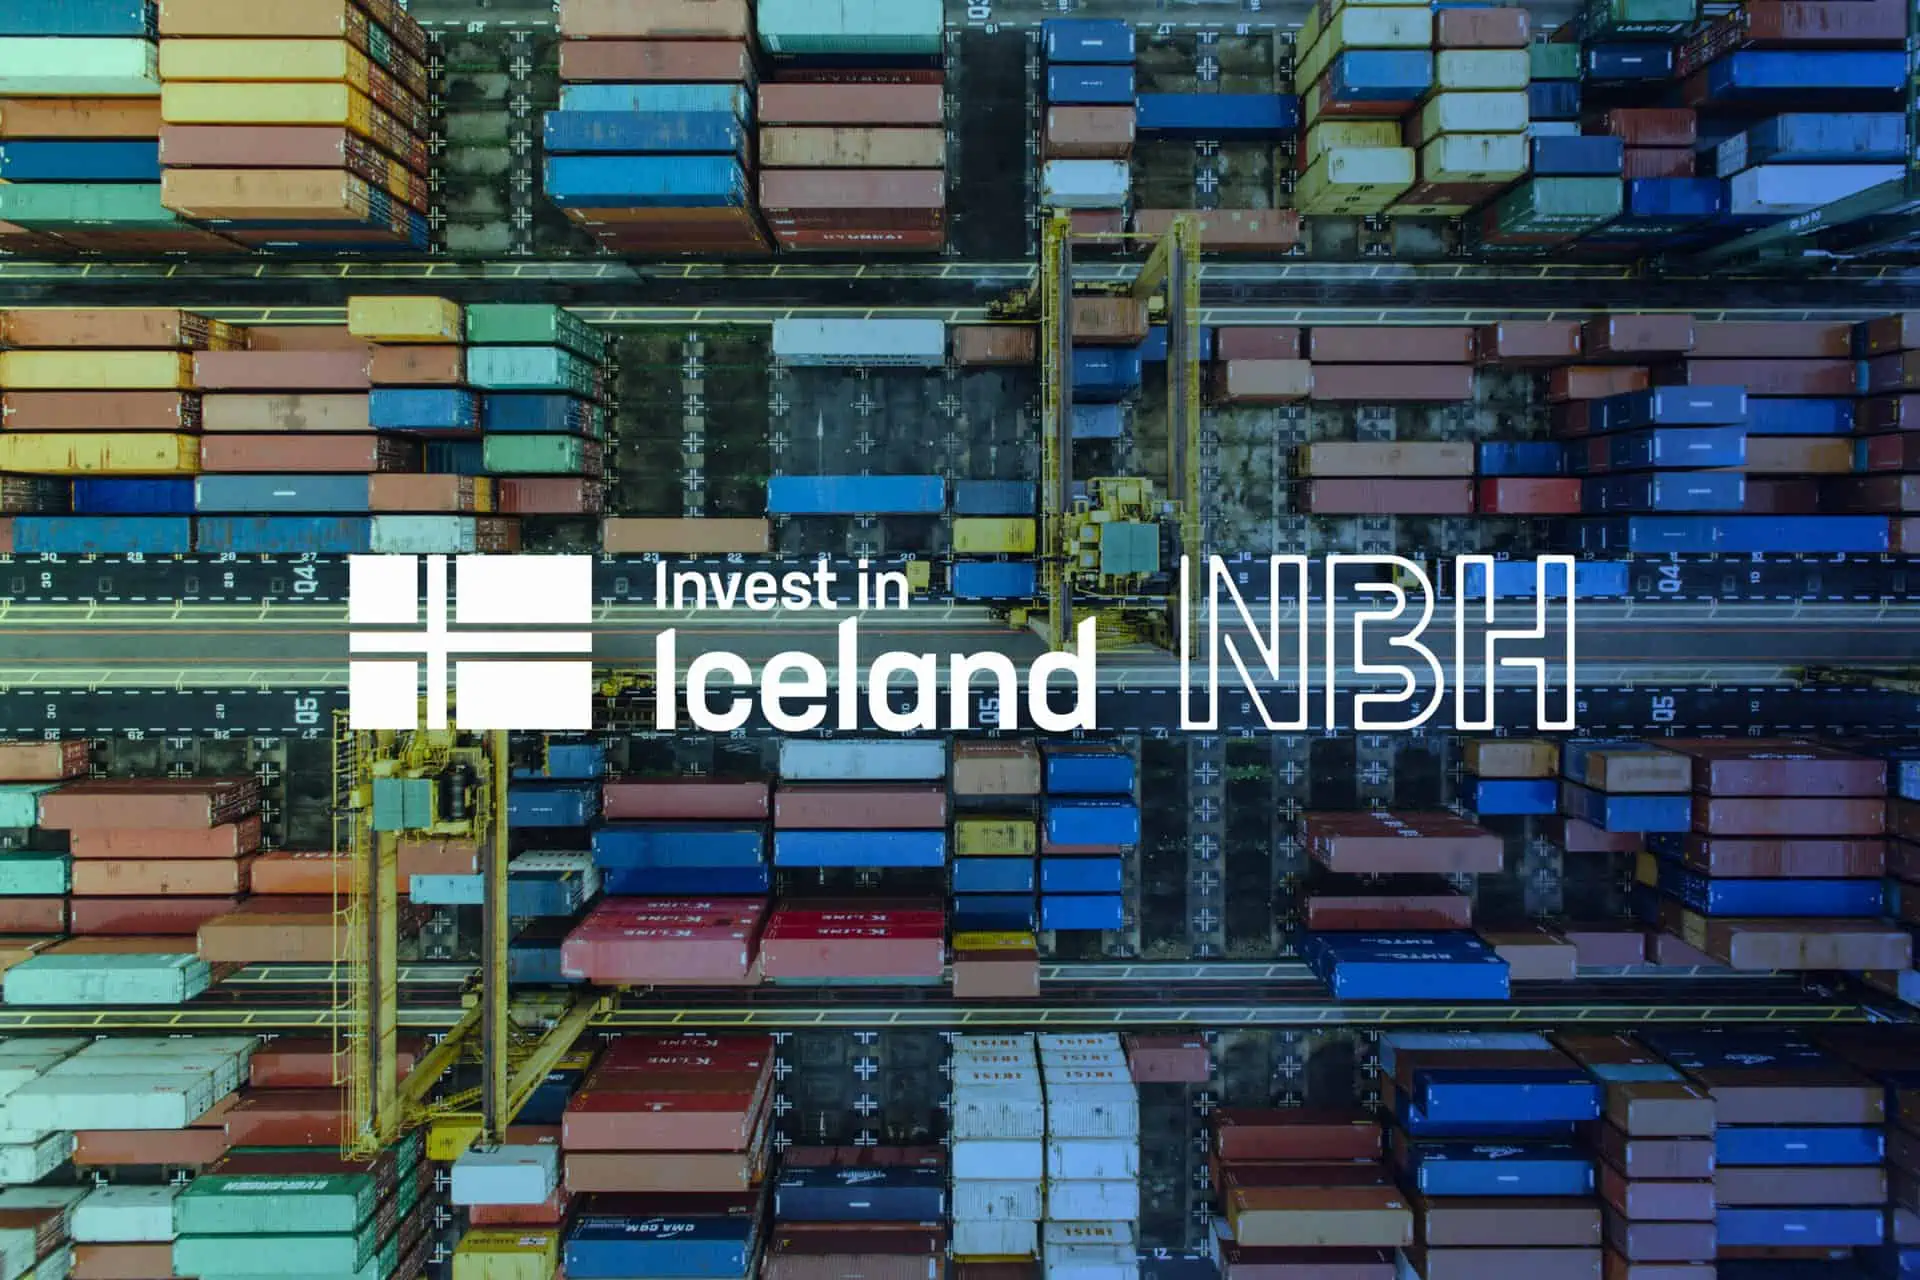 Promote Iceland udvider sit partnerskab med NBH om Invest in Iceland